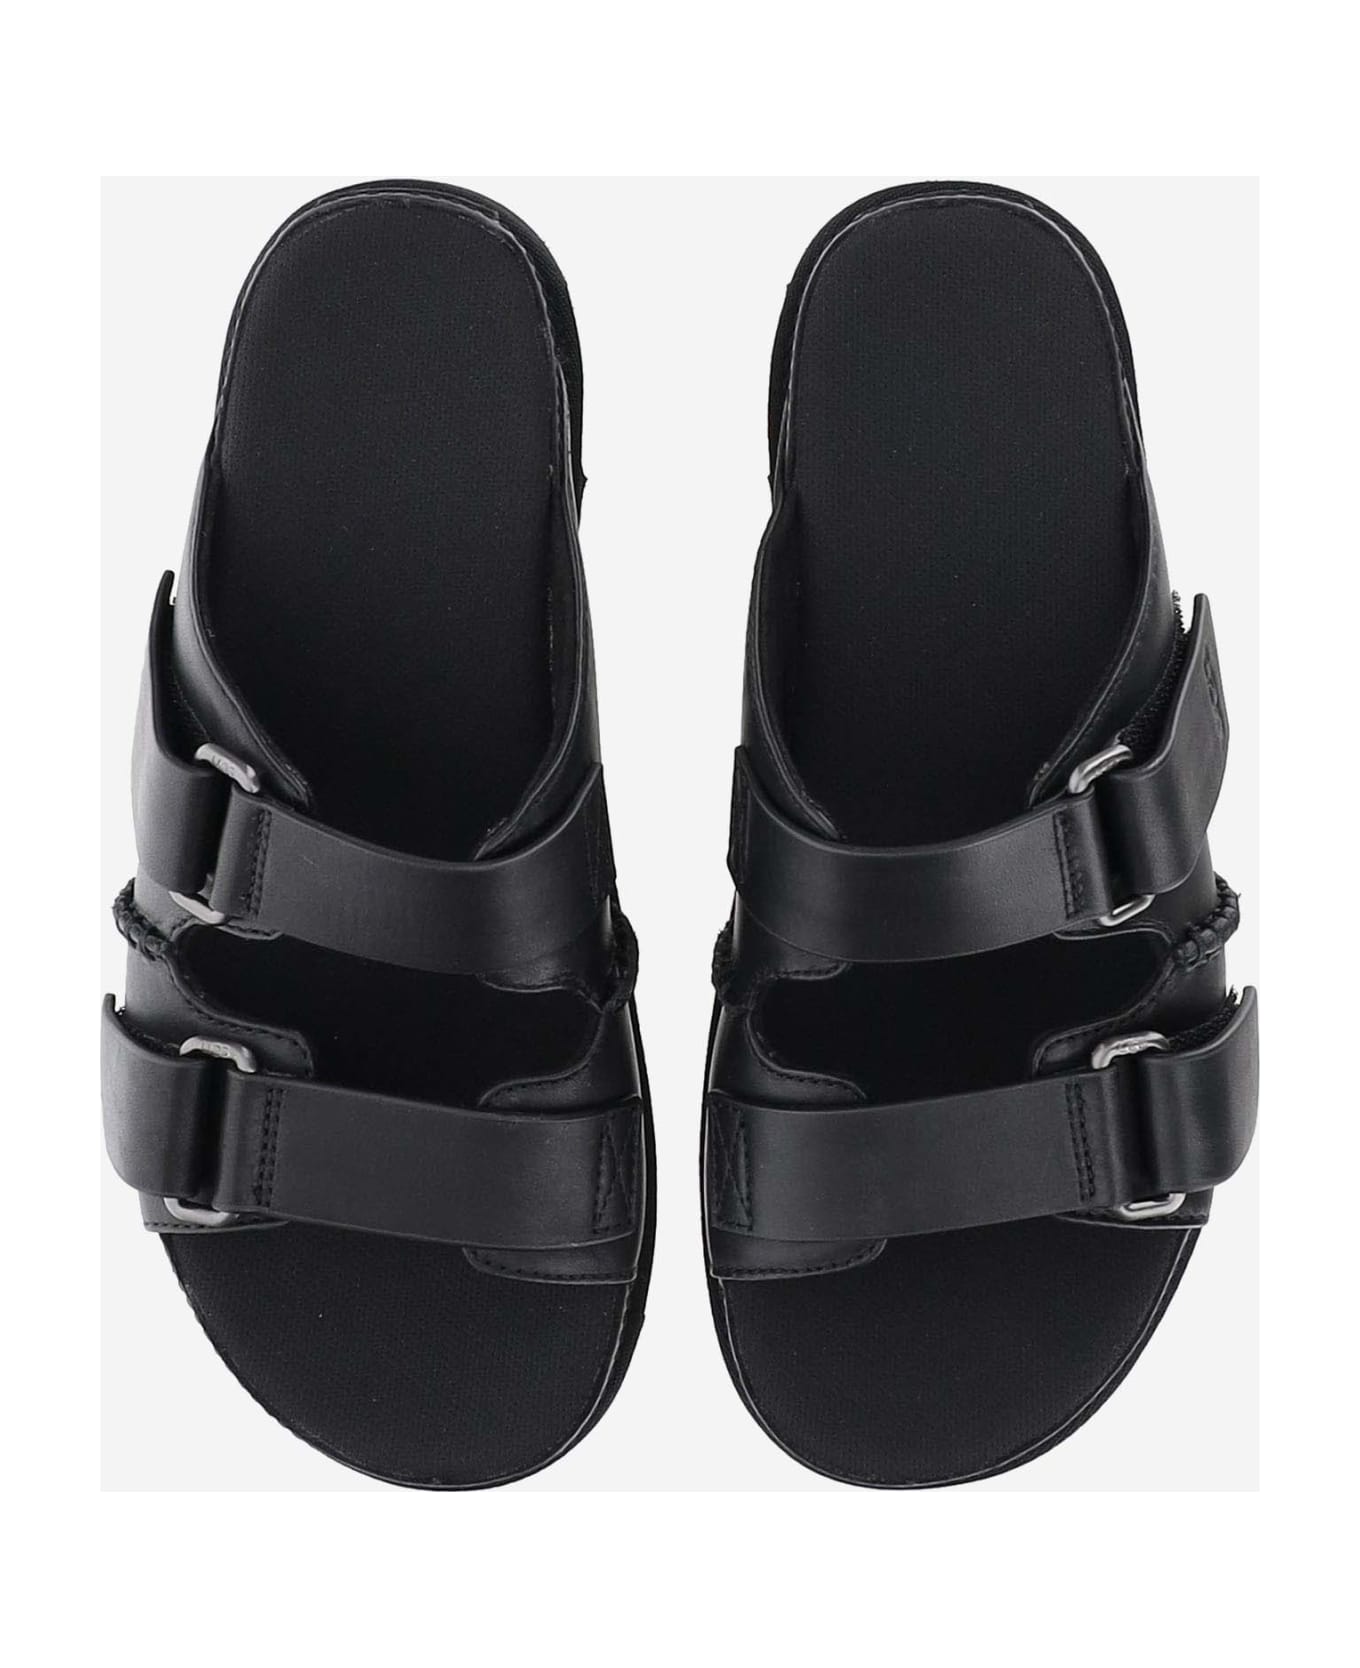 UGG Goldenstar Hi Leather Sandals - Black